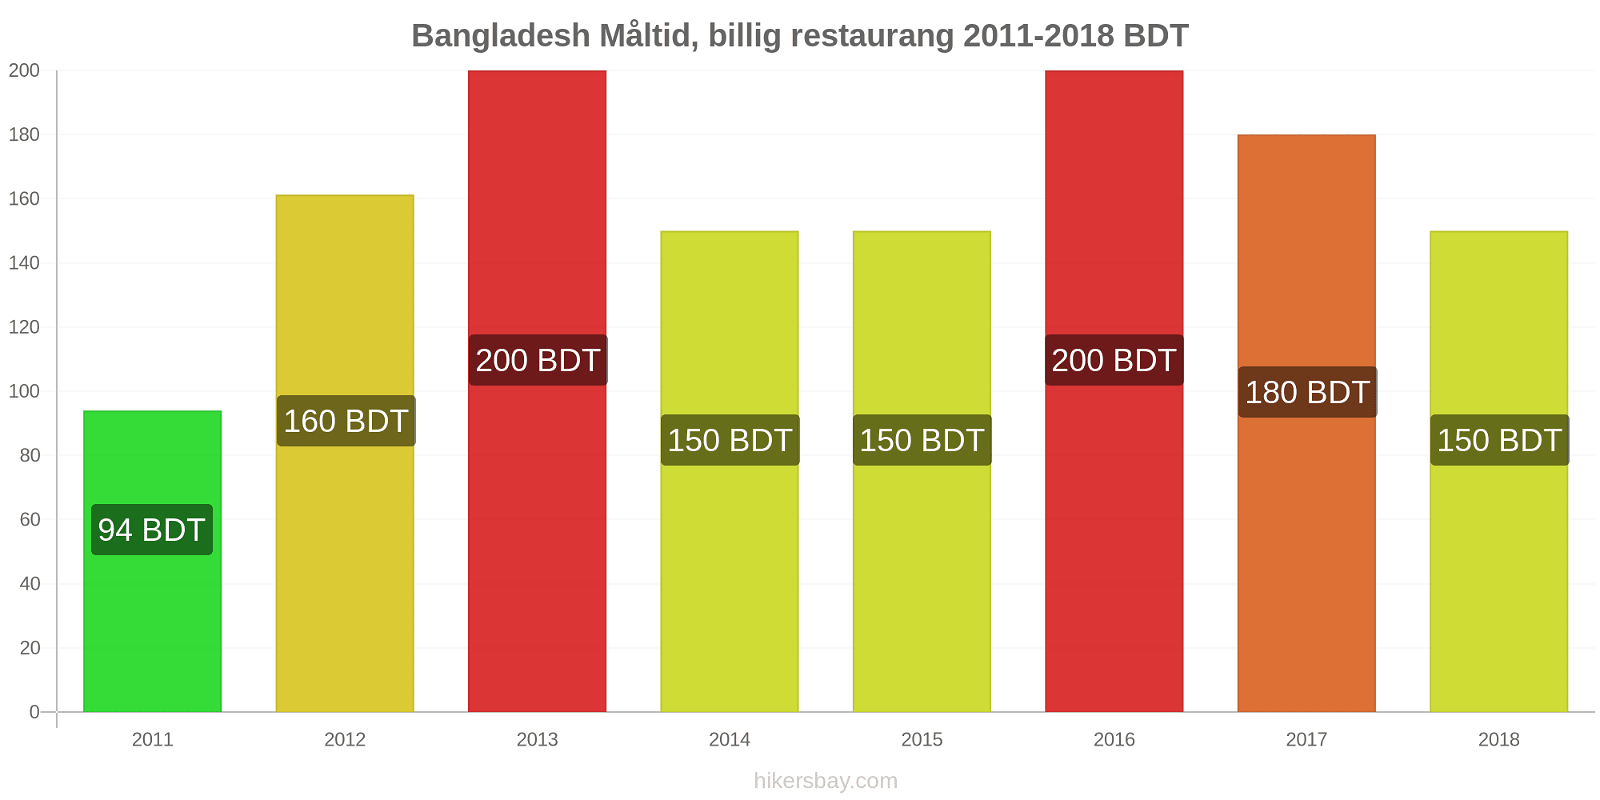 Bangladesh prisändringar Måltid i en billig restaurang hikersbay.com